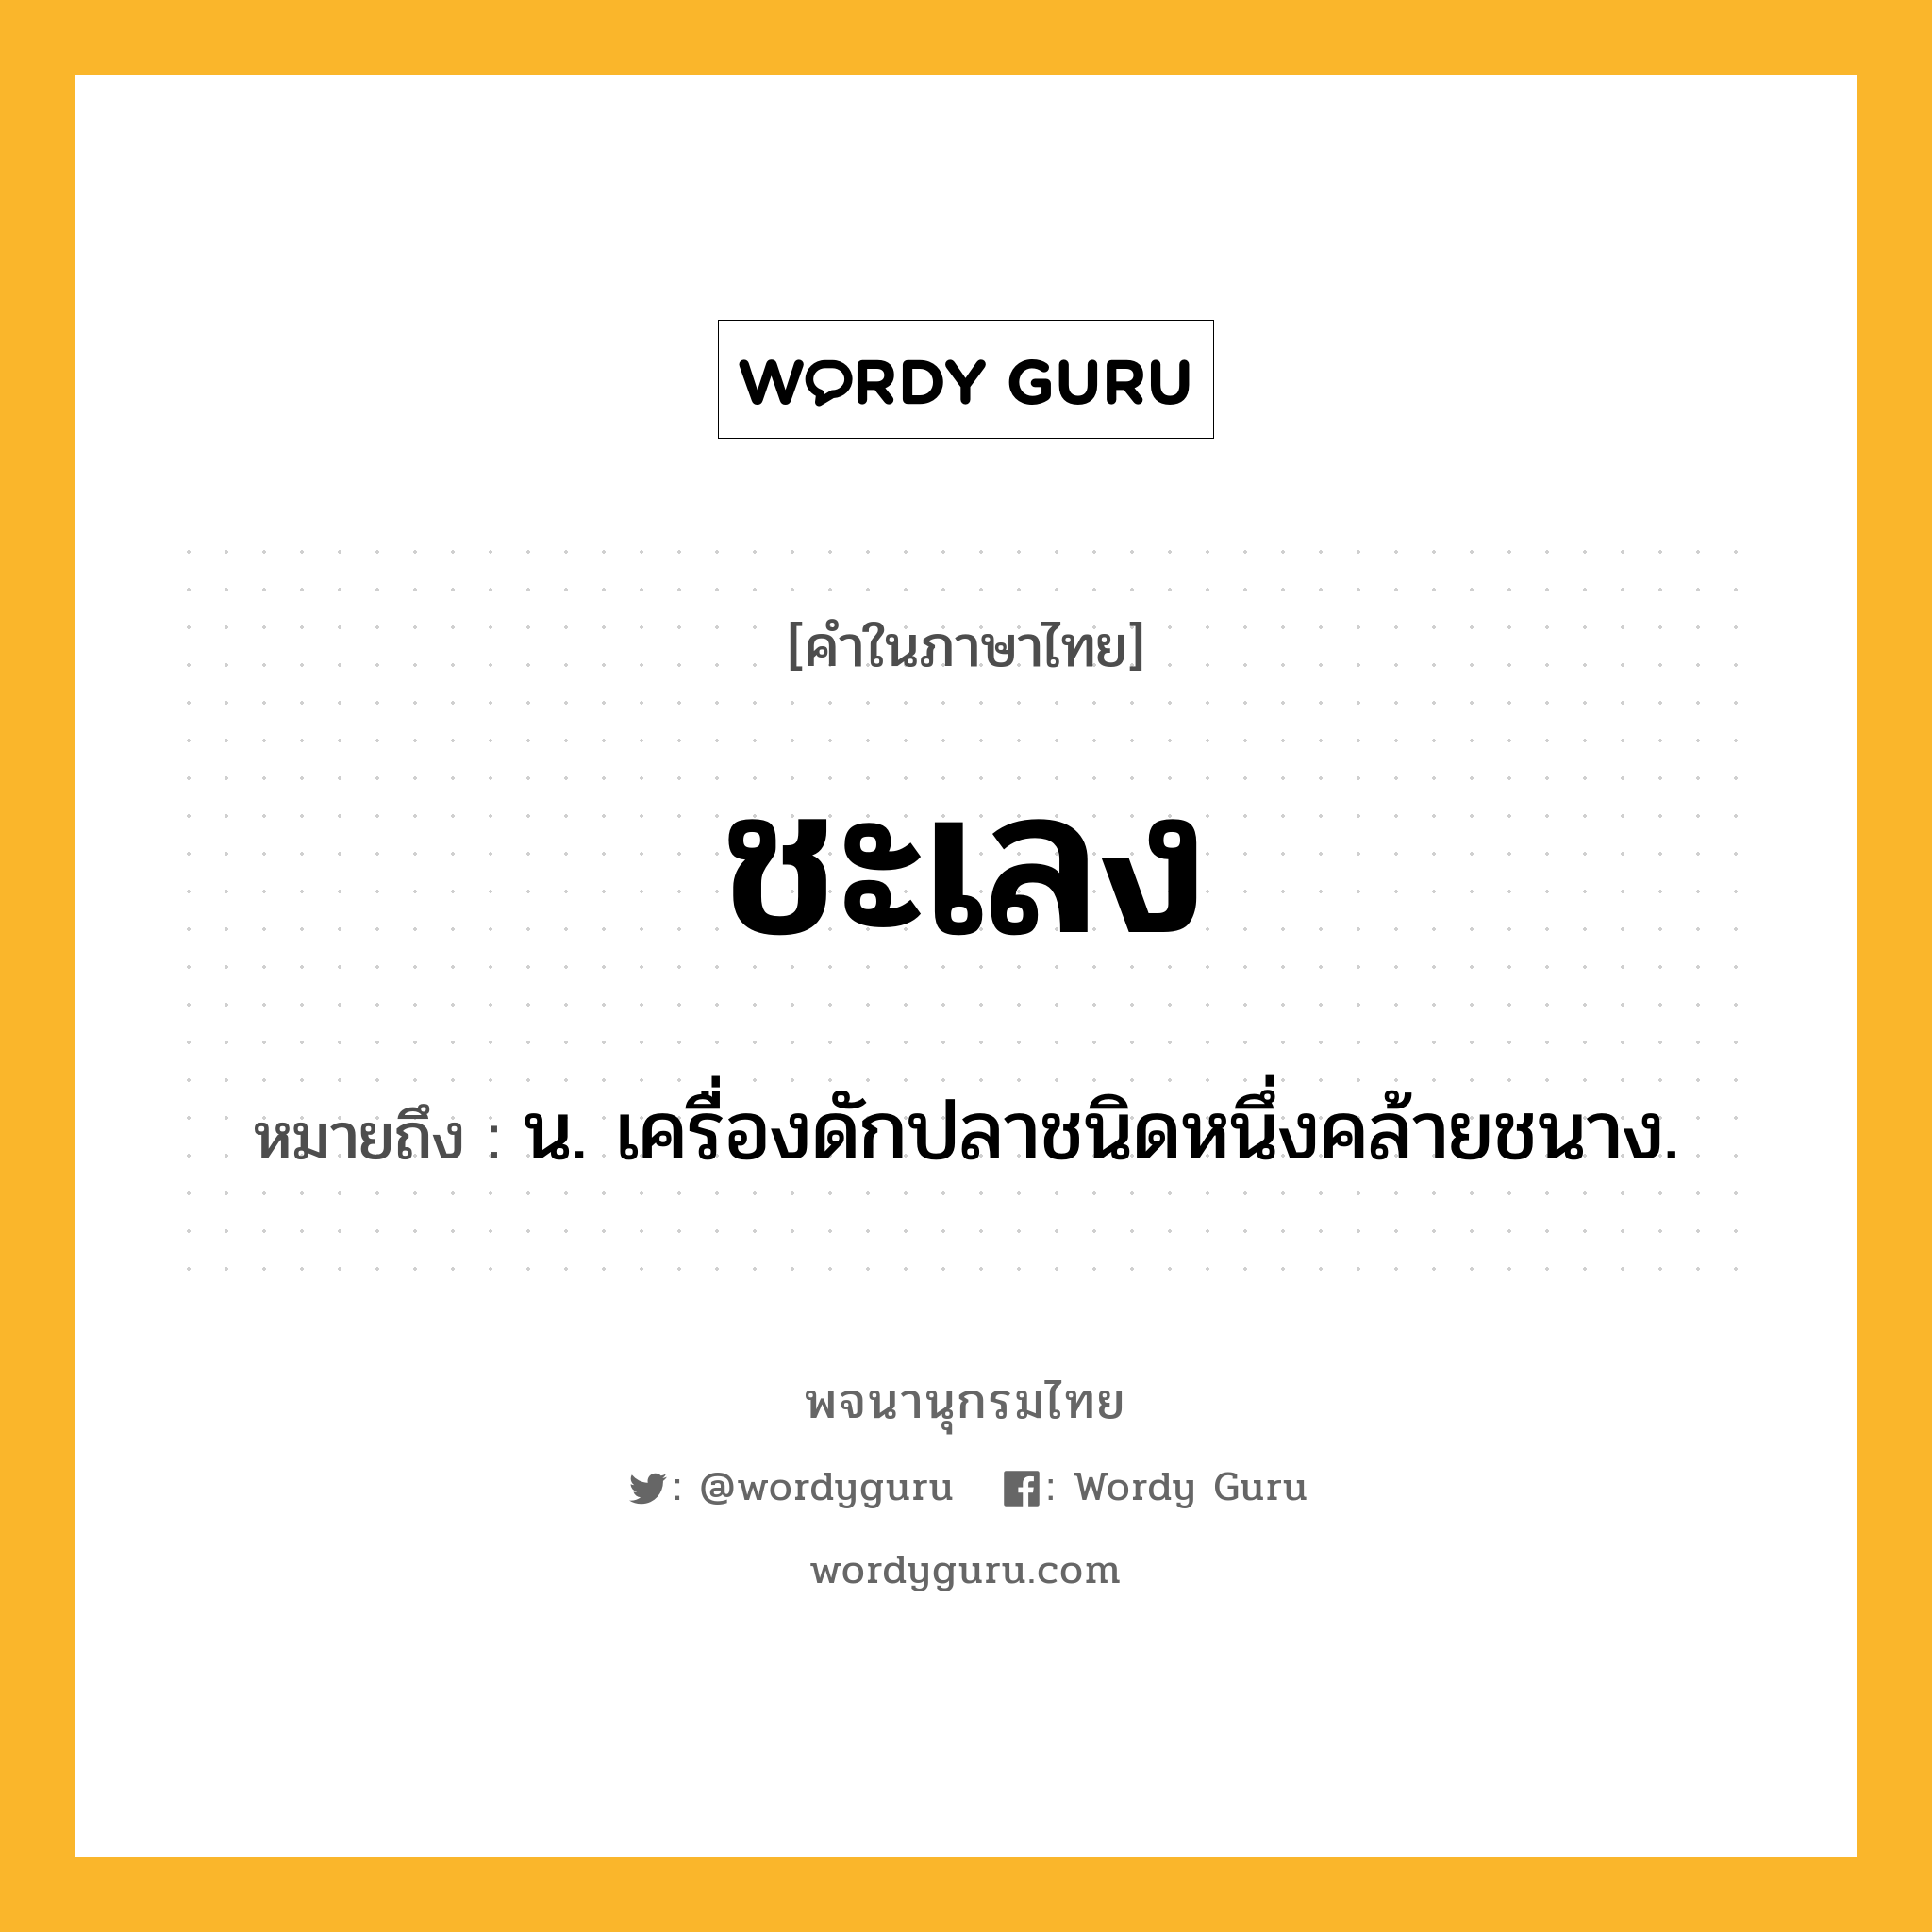 ชะเลง หมายถึงอะไร?, คำในภาษาไทย ชะเลง หมายถึง น. เครื่องดักปลาชนิดหนึ่งคล้ายชนาง.